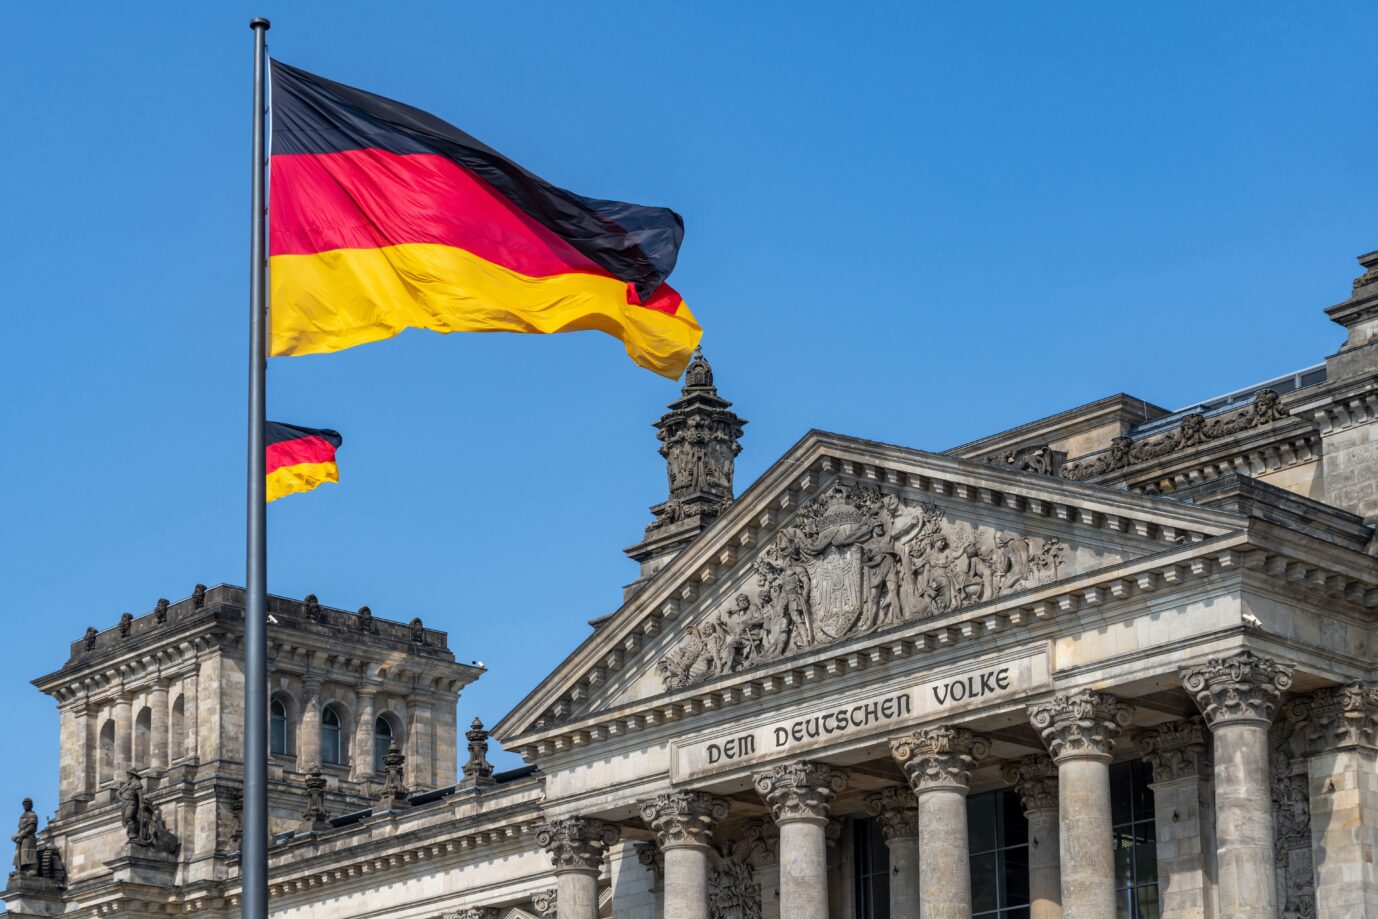 Statt der Deutschland-Fahne soll zwei Mal im Jahr die Regenbogen-Fahne vor dem Reichstag wehen, hat das Bundestagspräsidium beschlossen. Foto: picture alliance / Daniel Kalker